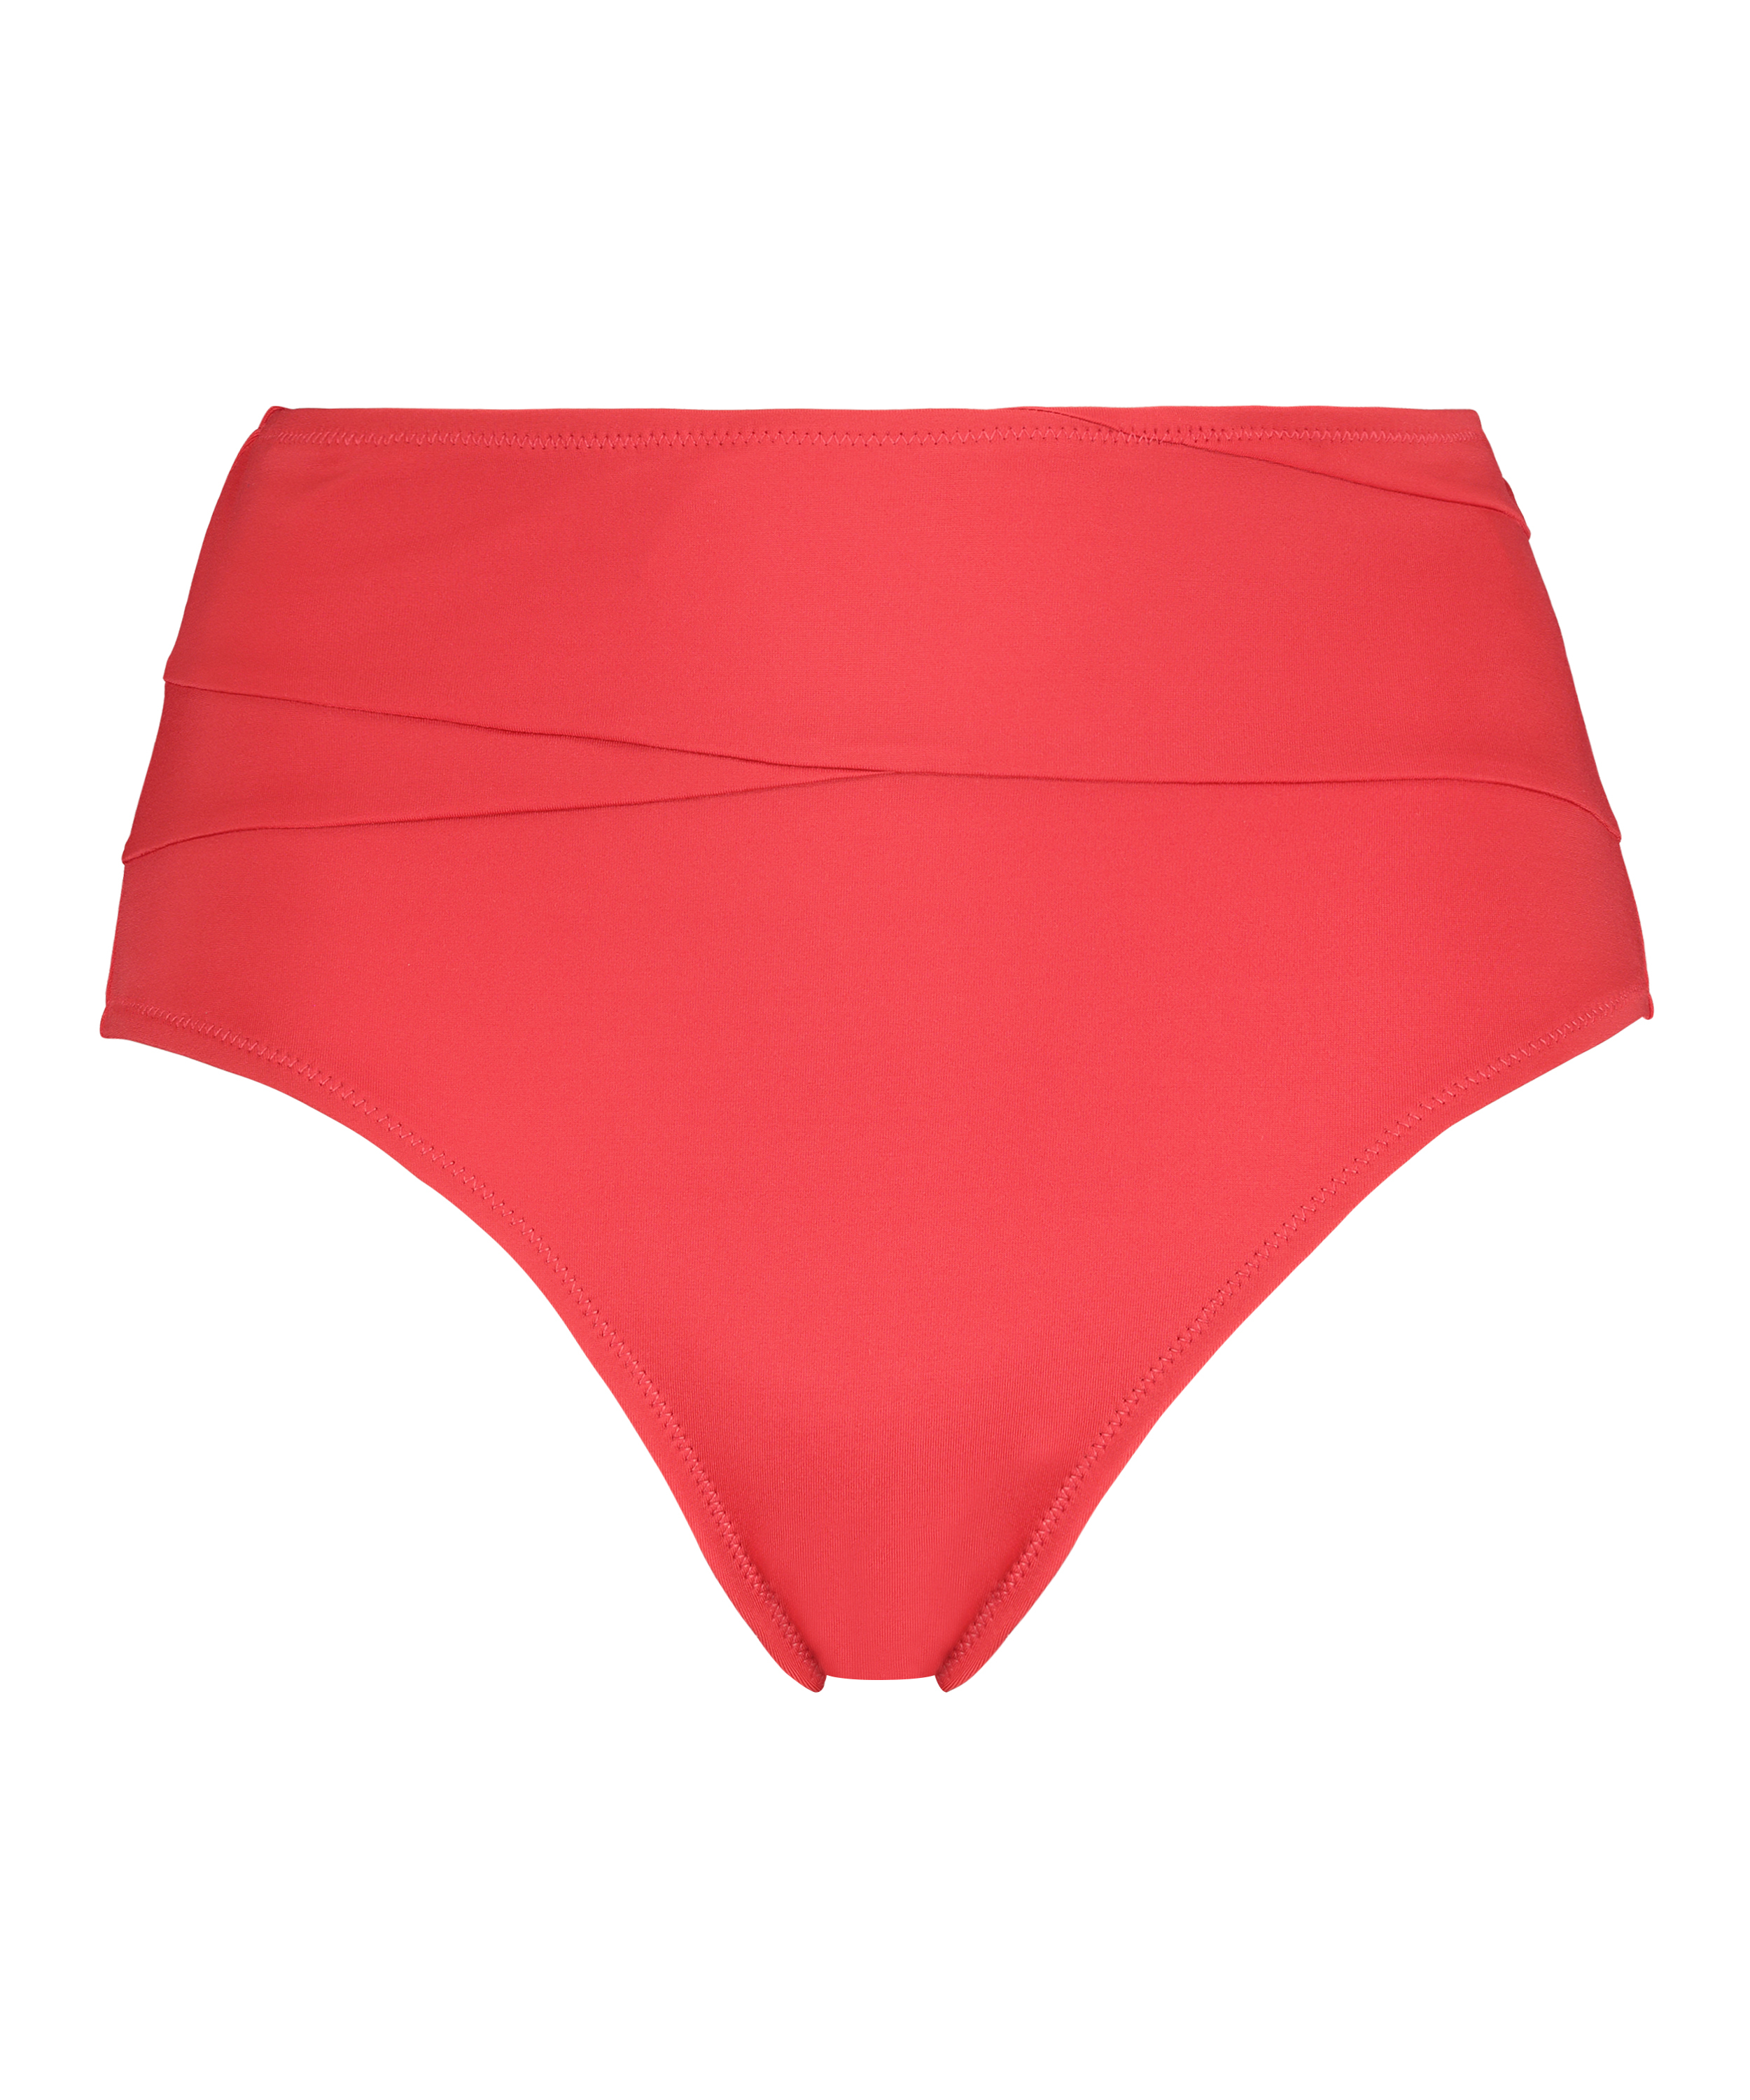 Hoher Rio Bikini-Slip Luxe, Rot, main